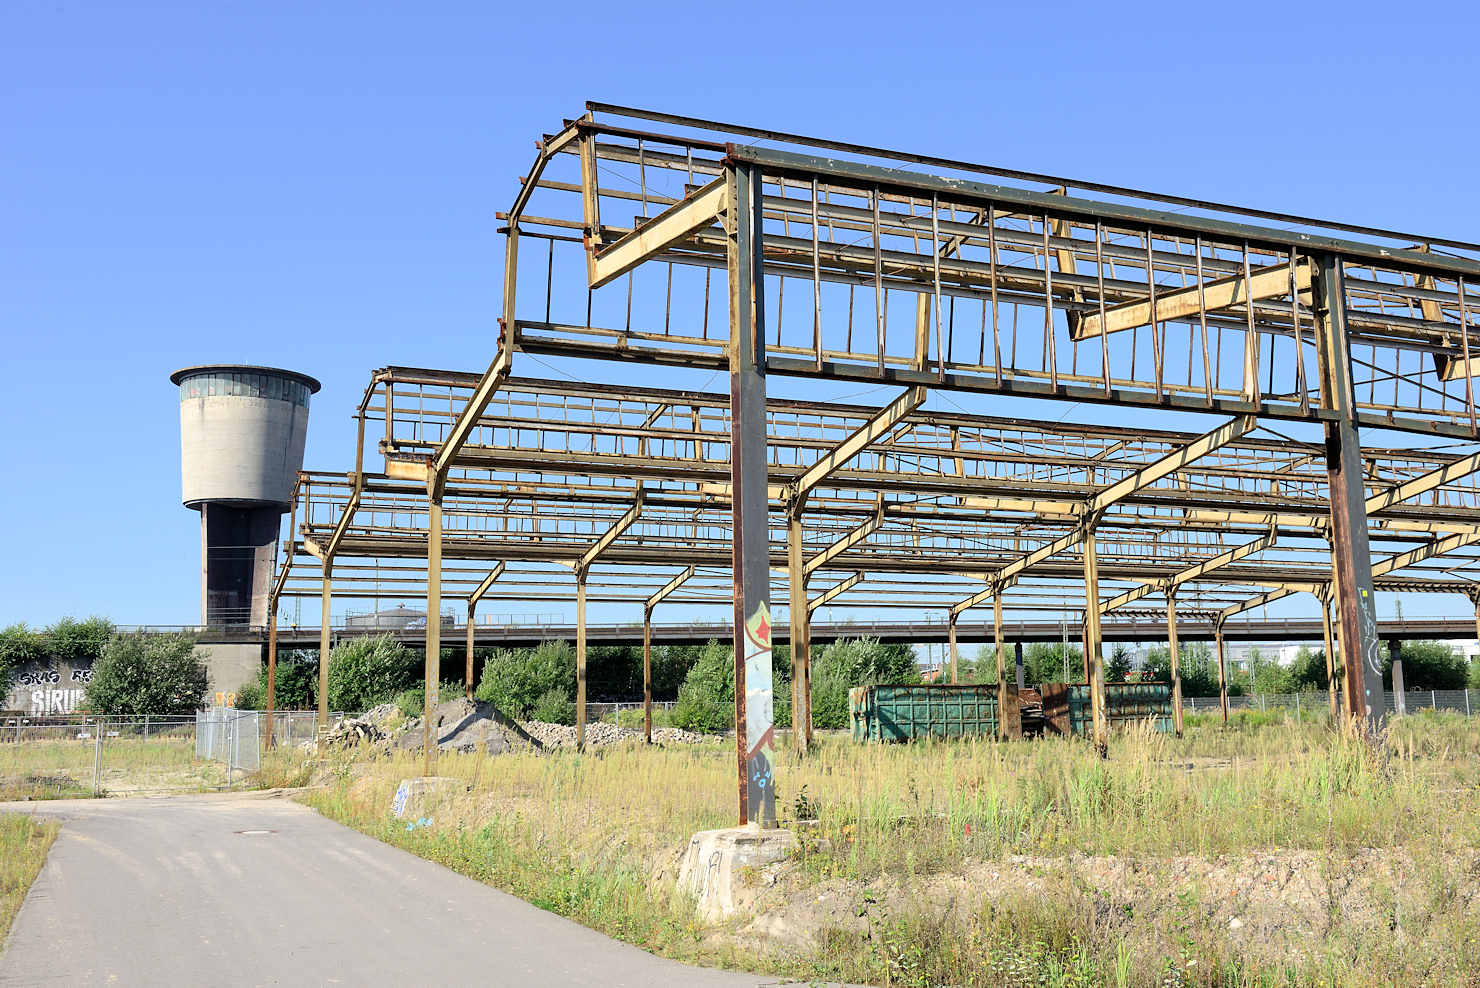 2372 Eisenkonstruktion - Dach einer ehemaligen Güterhalle | Altonaer Bahnhof - ehem. Güterbahnhof Harkortstrasse